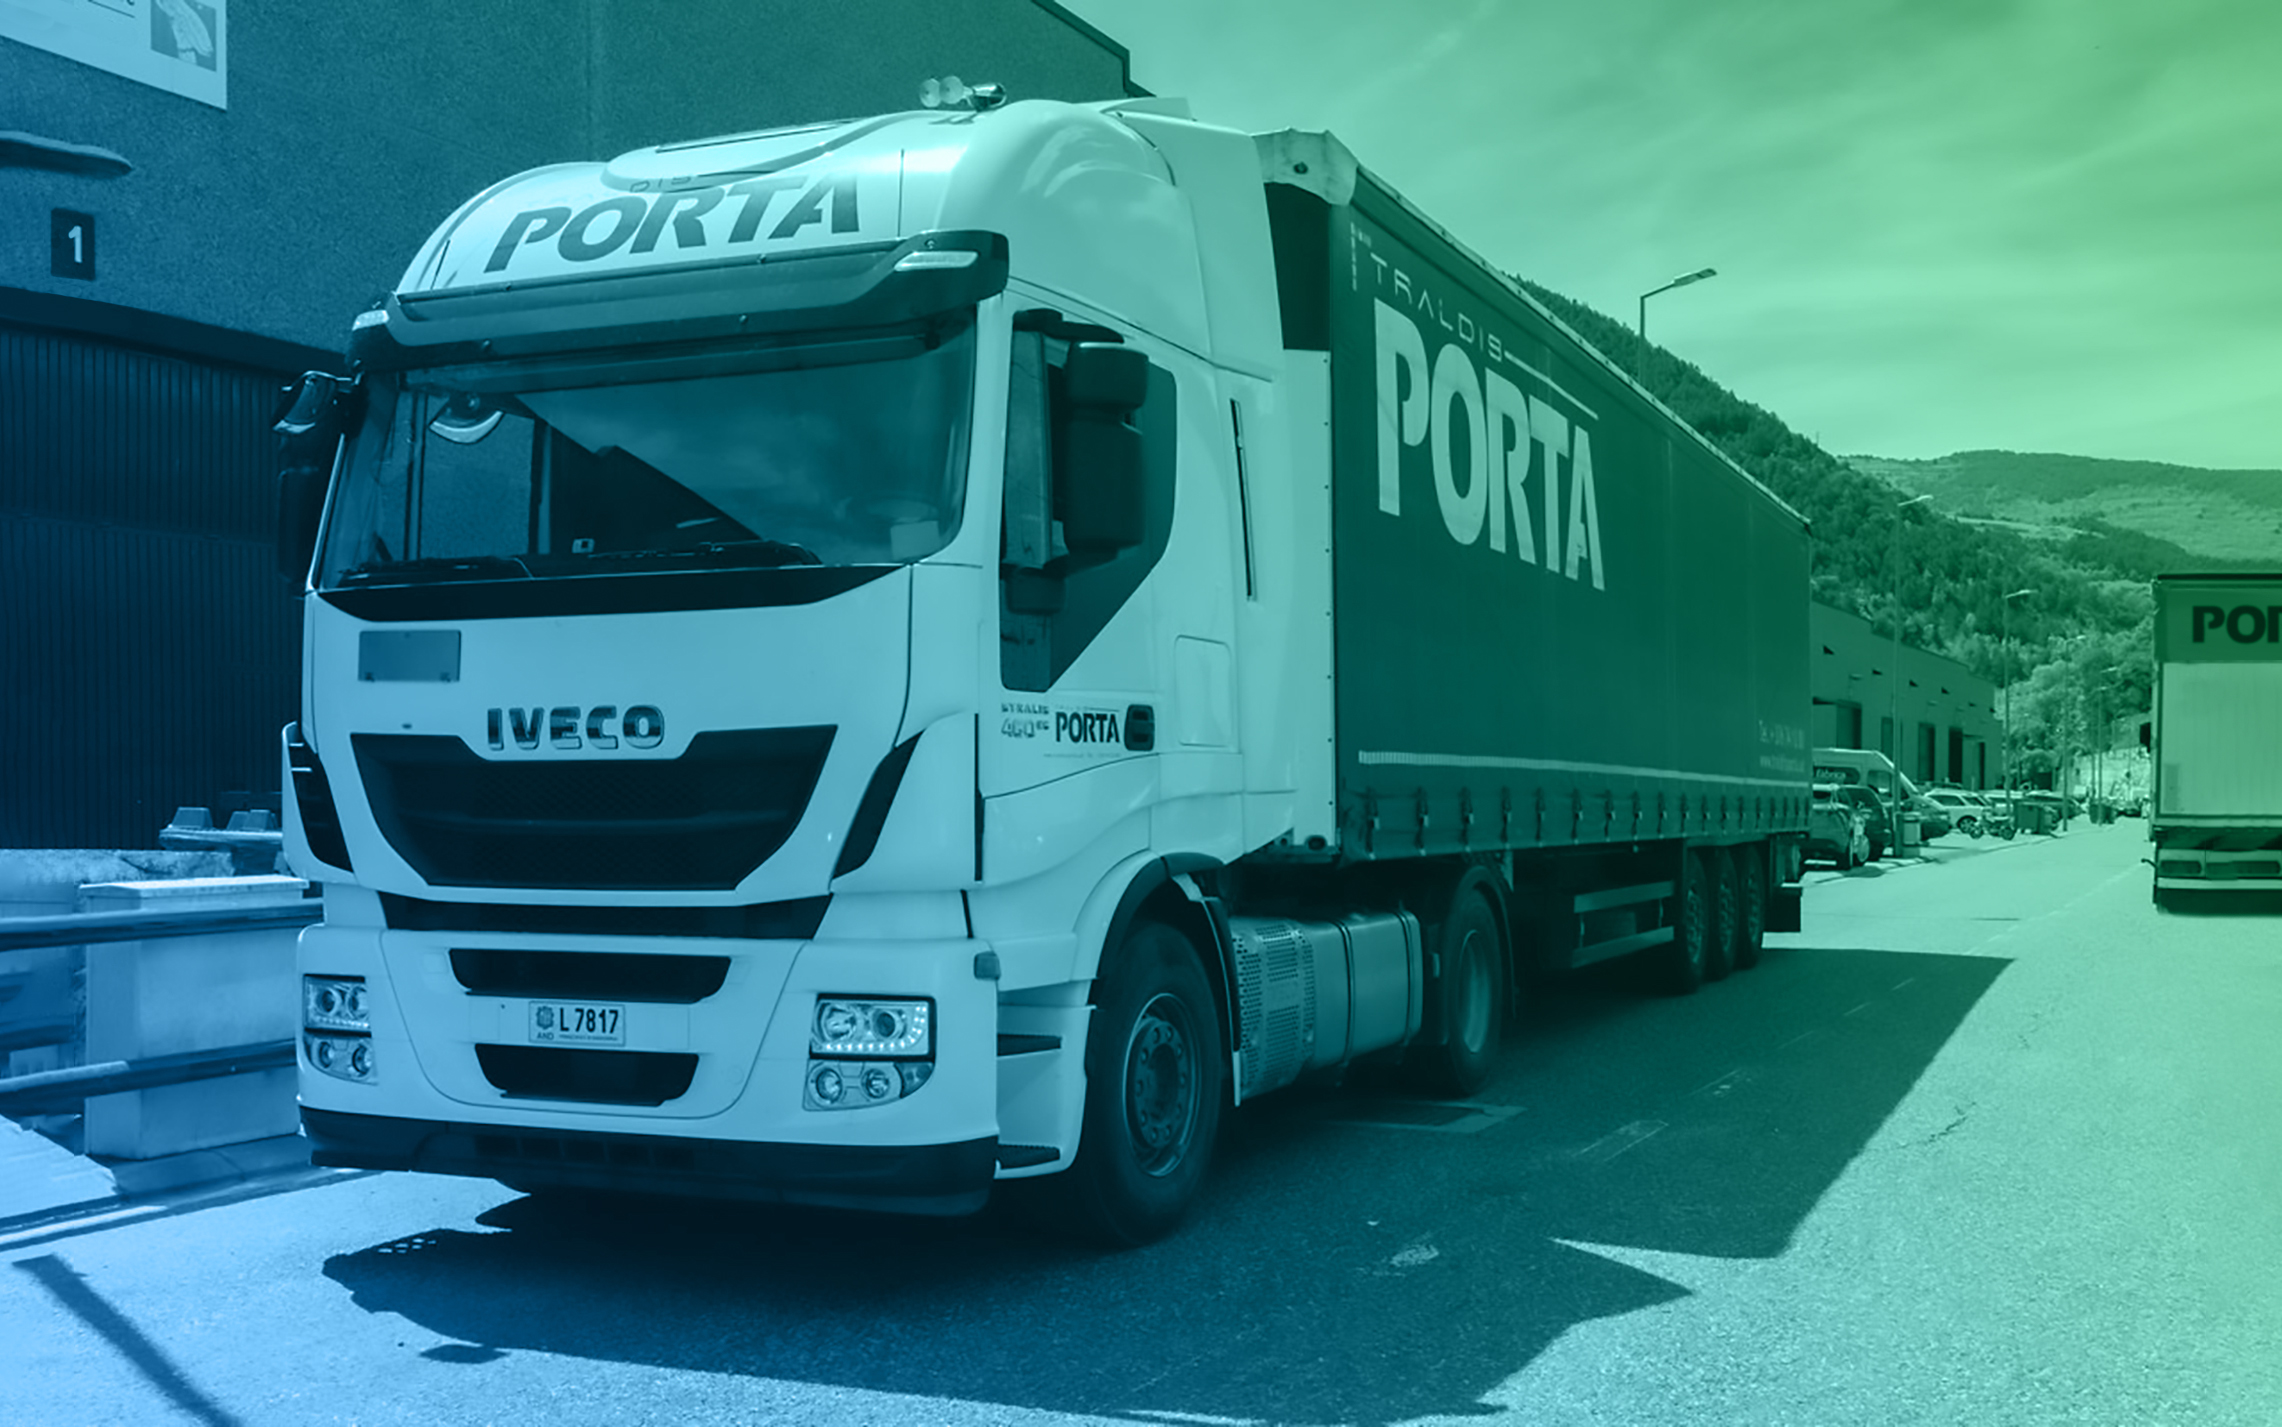 TRALDIS PORTA incorpora la solución de gestión de flotas integral de Gesinflot